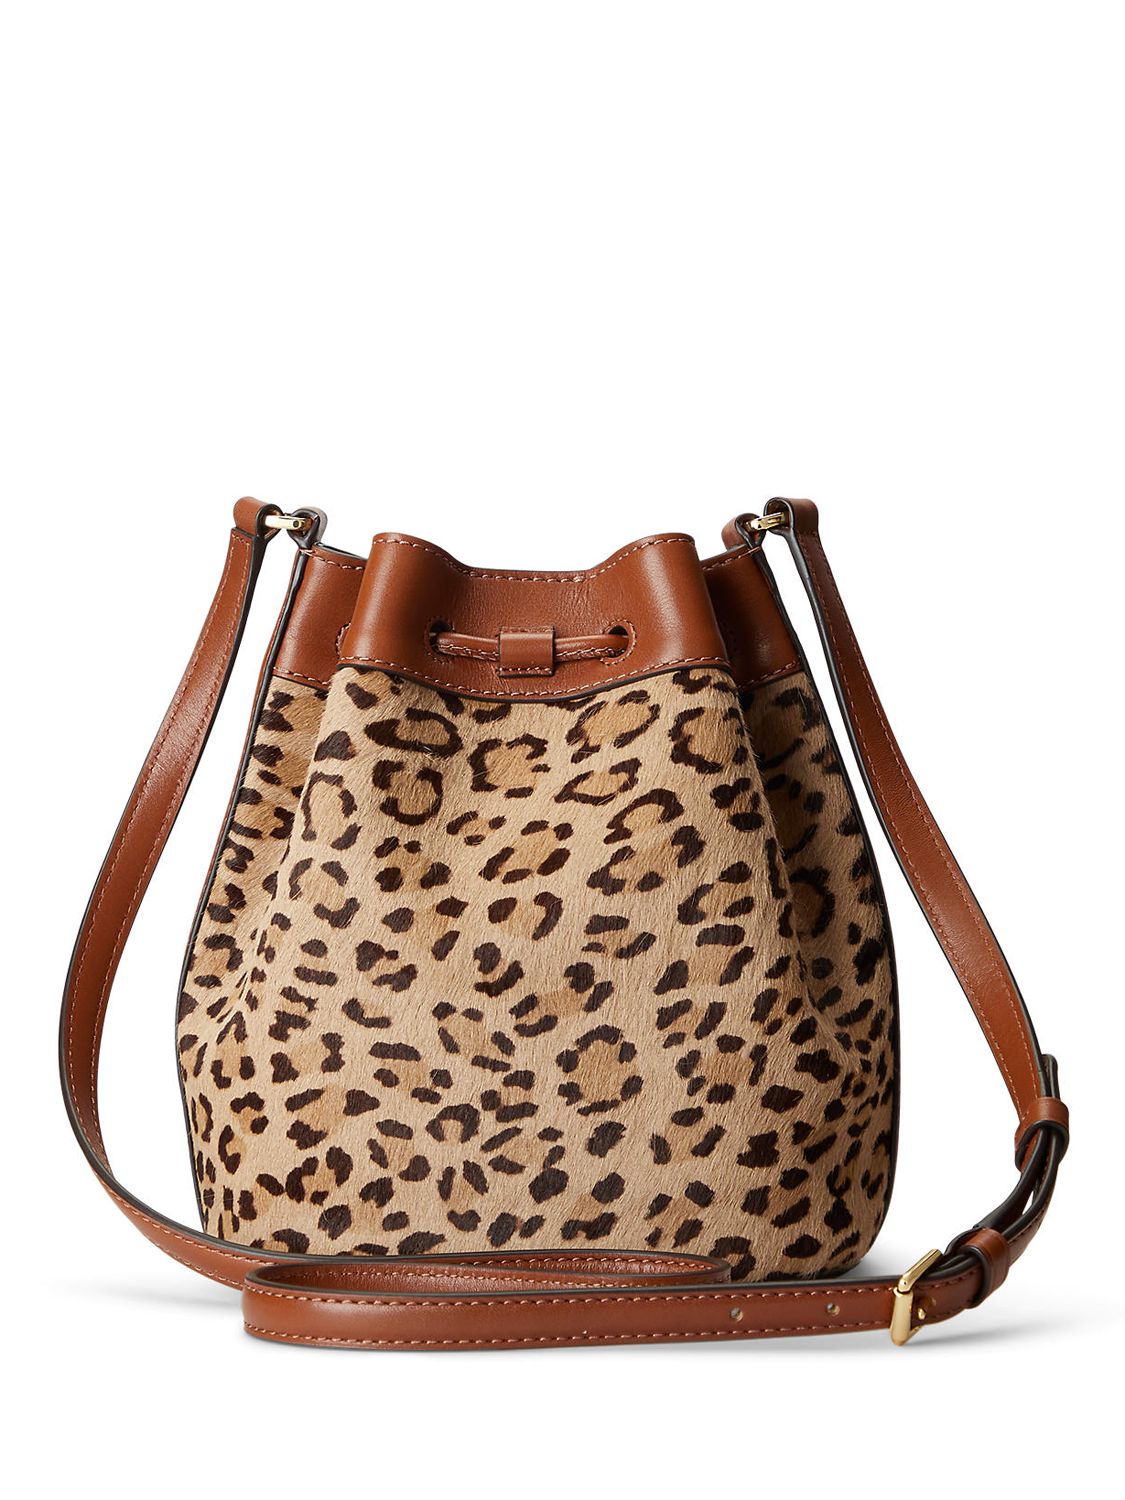 Lauren Ralph Lauren Andie 19 Leopard Print Leather Bucket Bag, Tan at ...